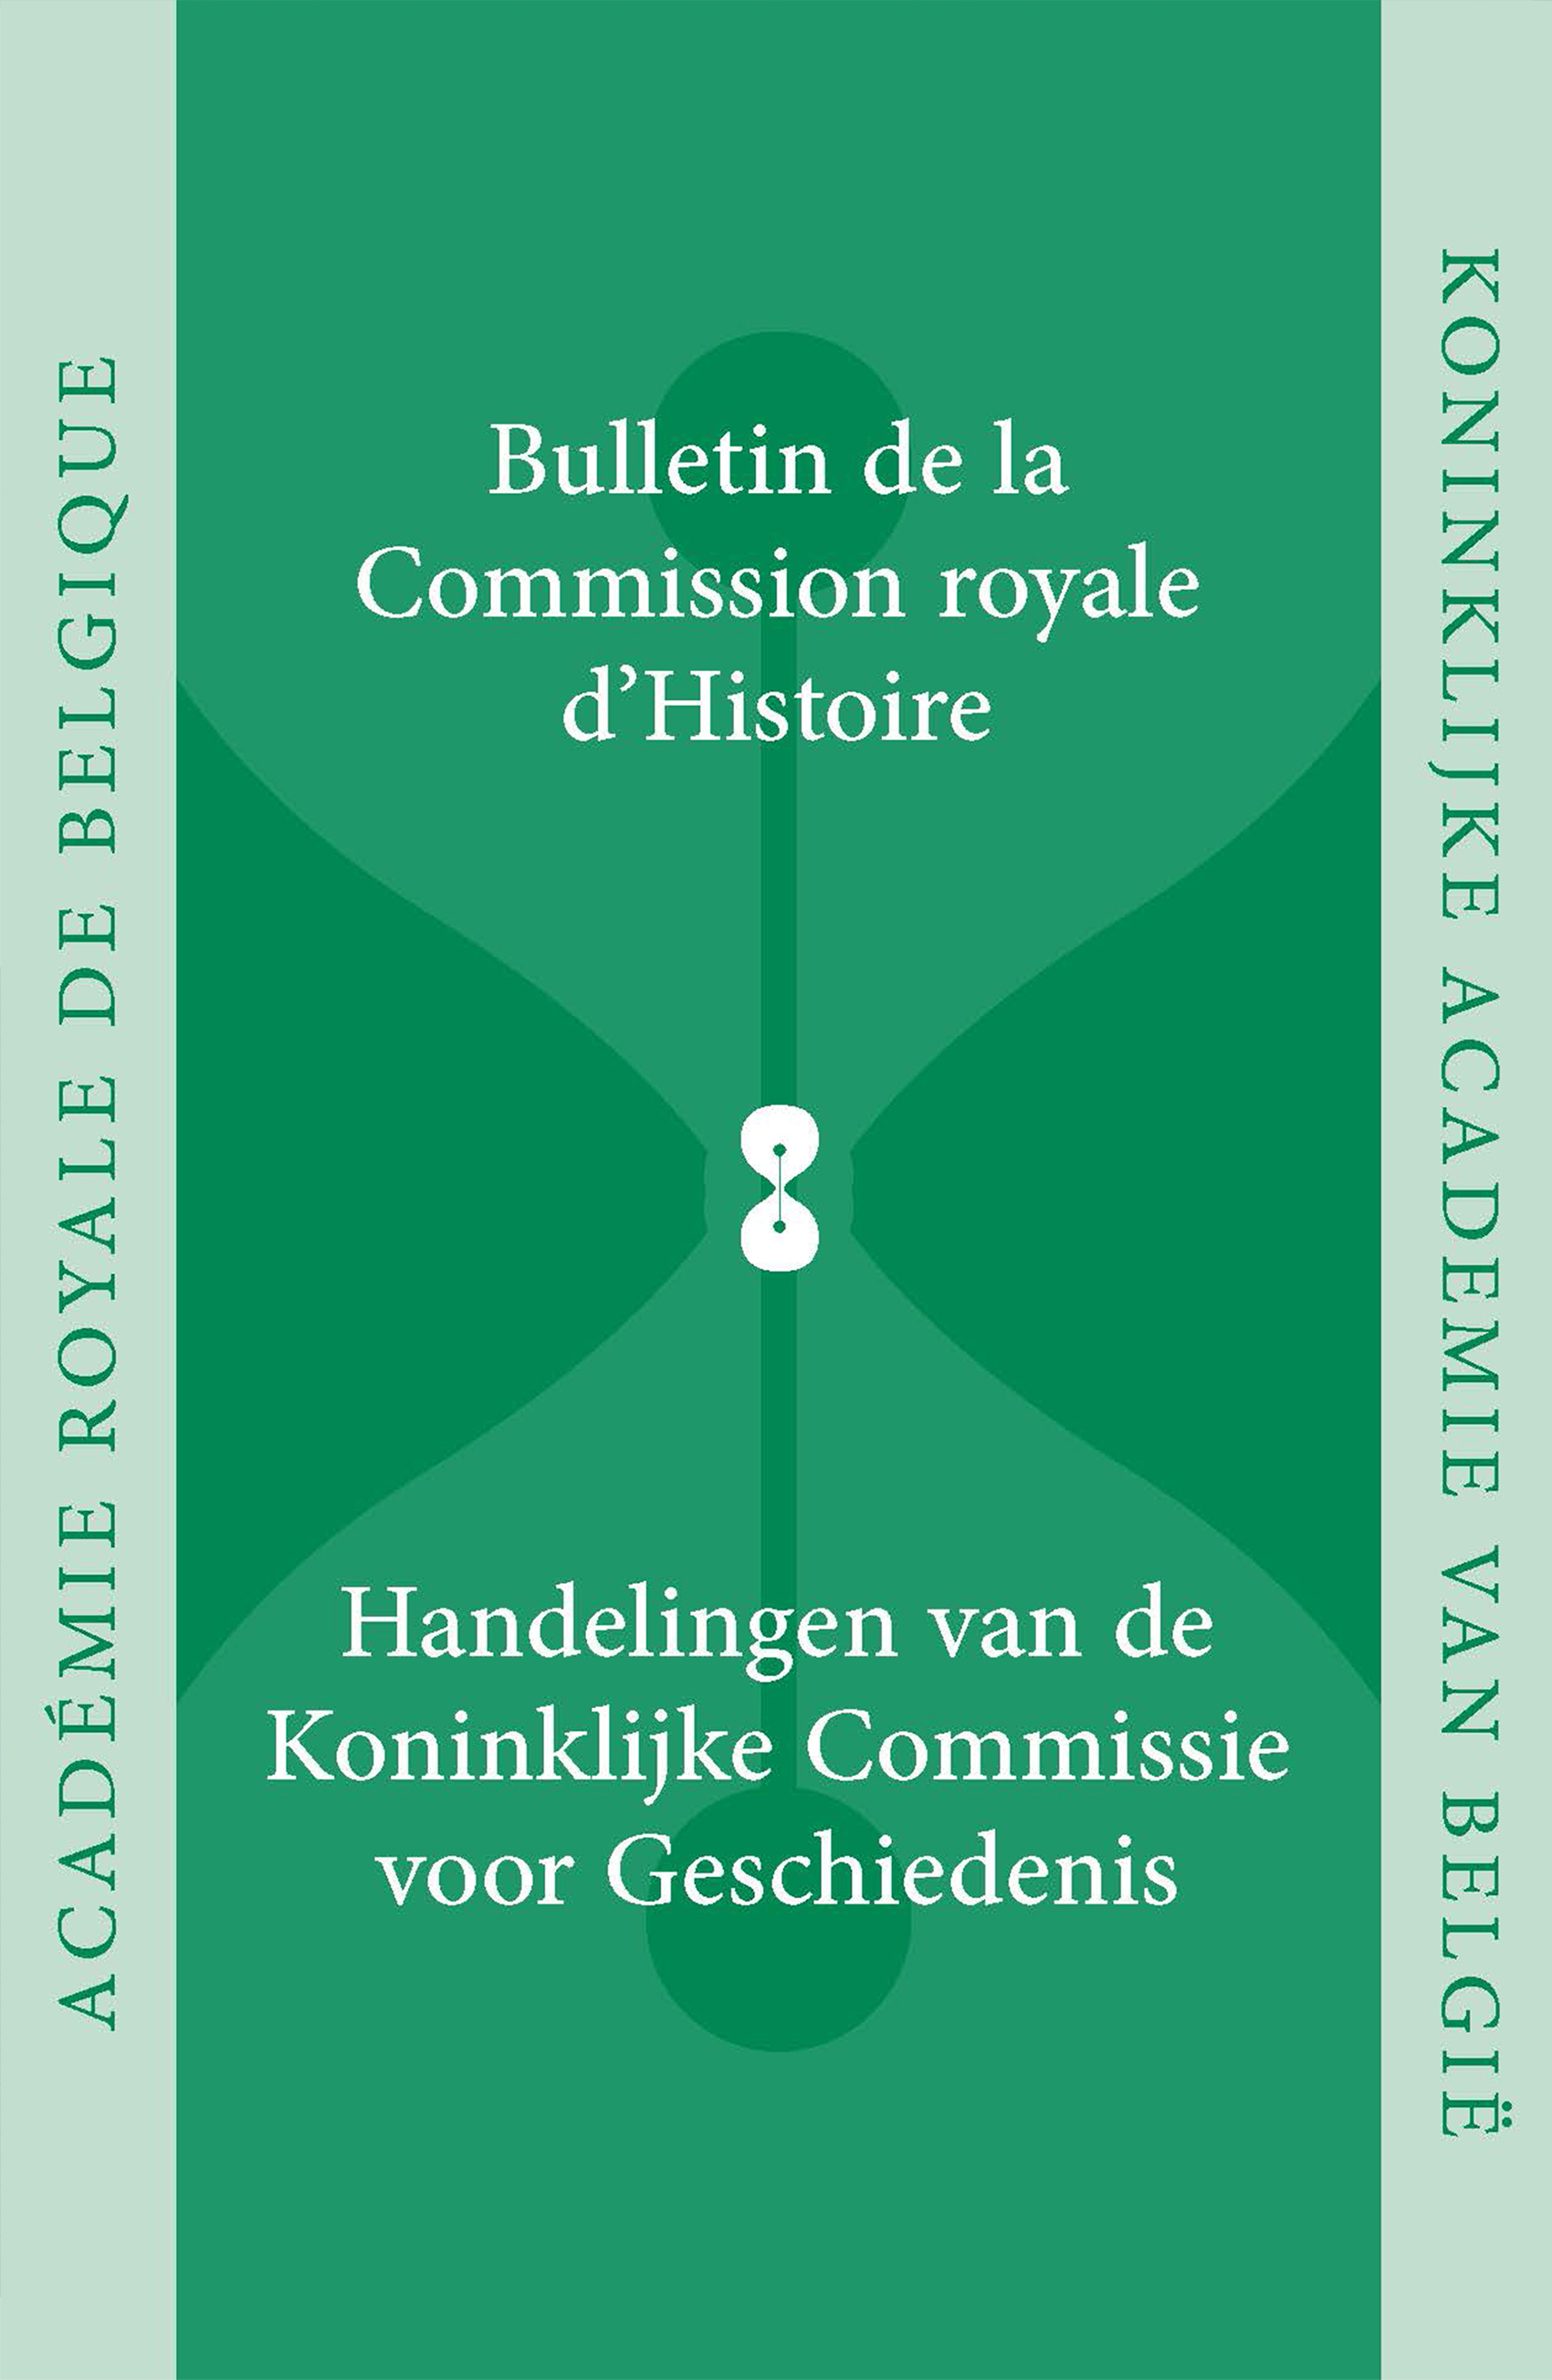 HANDELINGEN VAN DE KONINKLIJKE COMMISSIE VOOR GESCHIEDENIS/BULLETINS, VOL. 187, 2021 (kcg)